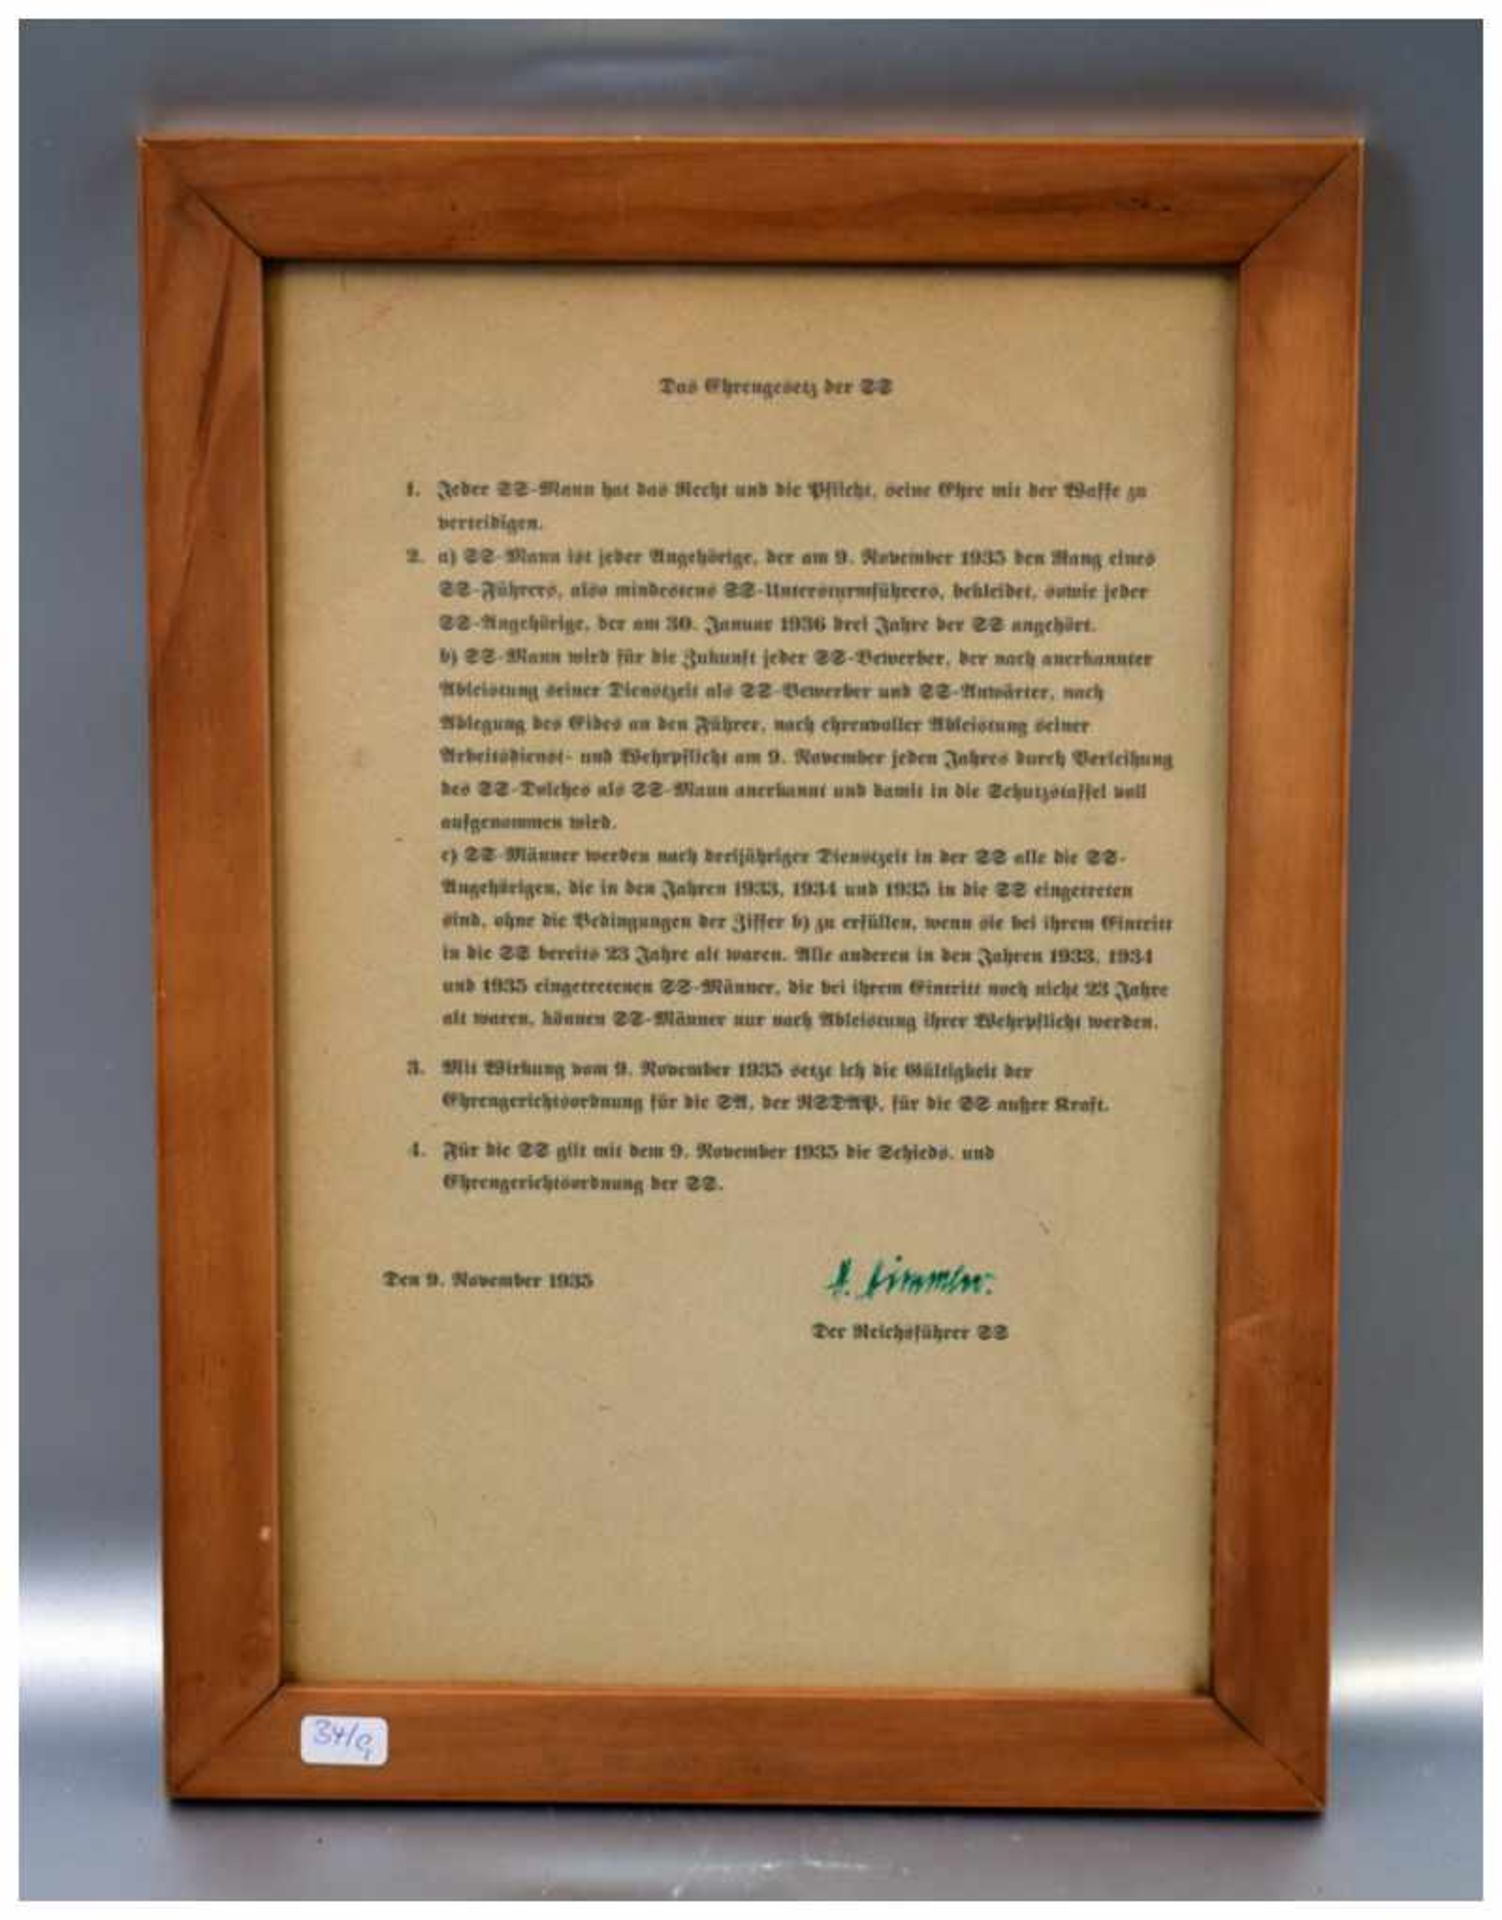 Ehrengesetz der SS mit Unterschrfit, H.Himmler, im Rahmen, 24 X 34 cm